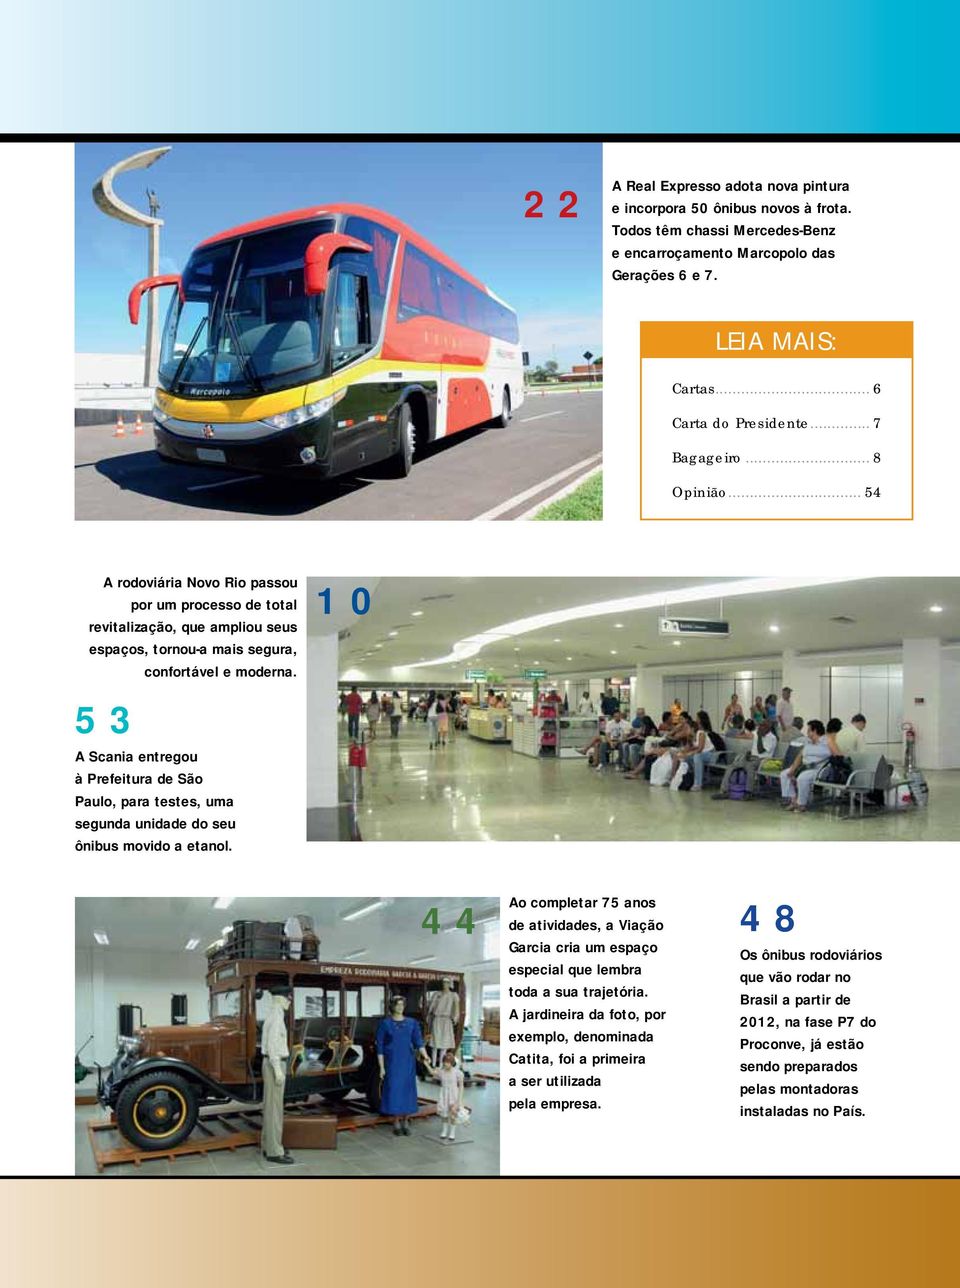 10 53 A Scania entregou à Prefeitura de São Paulo, para testes, uma segunda unidade do seu ônibus movido a etanol.